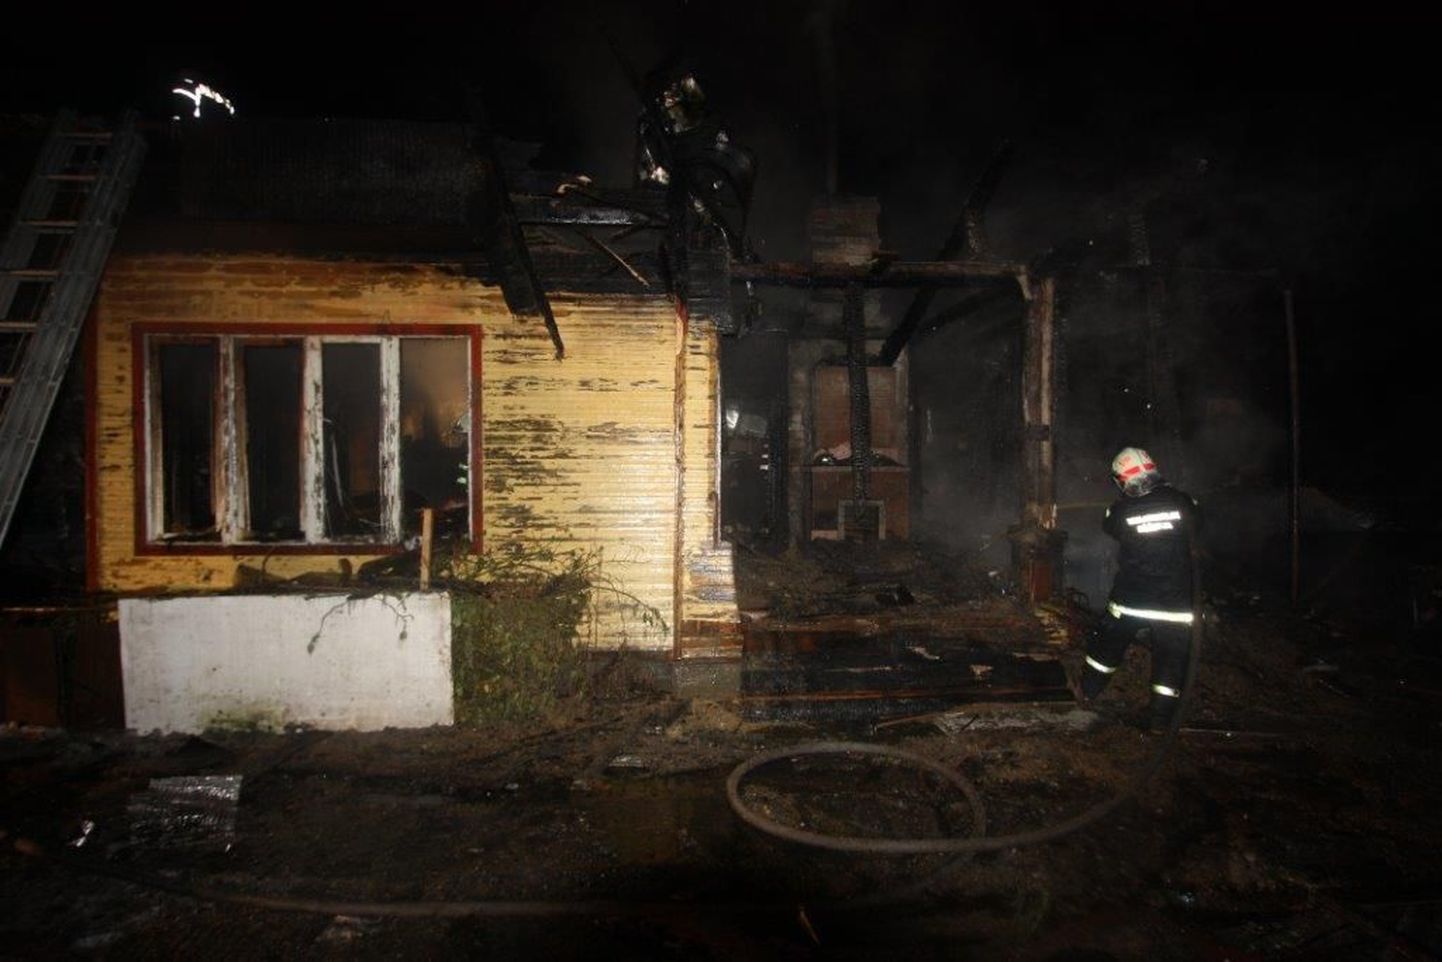 Третьего января в Кохтла-Ярве сгорел жилой дом. Хозяева дома, пожилые люди, остались практически на улице.